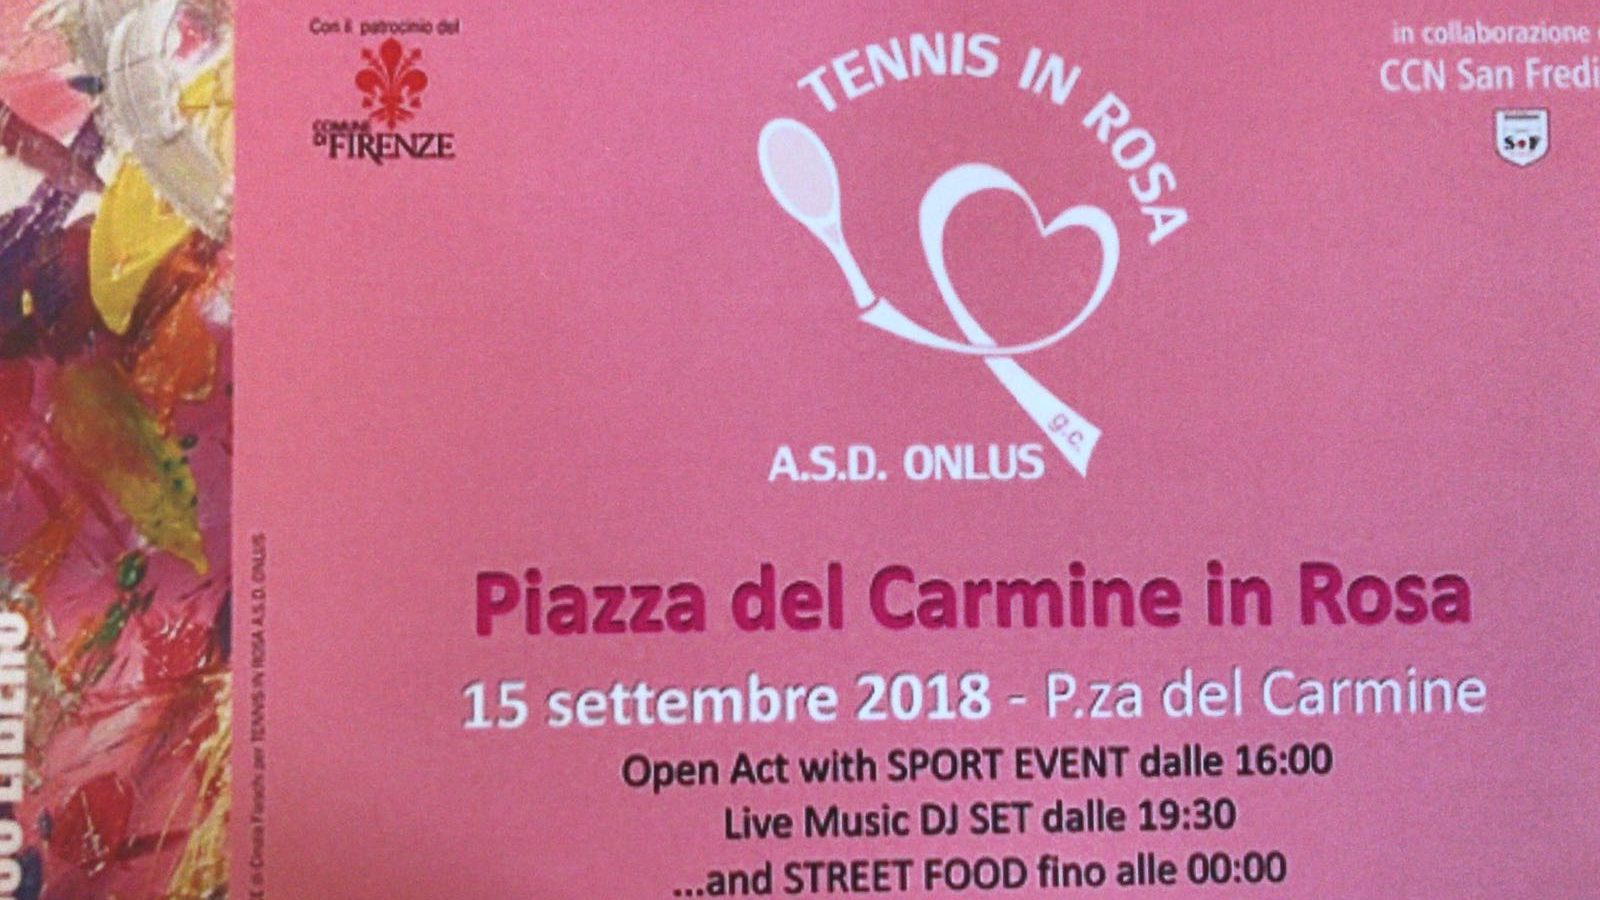 Tennis in rosa: sport e solidarietà uniti per la lotta contro tumore al seno